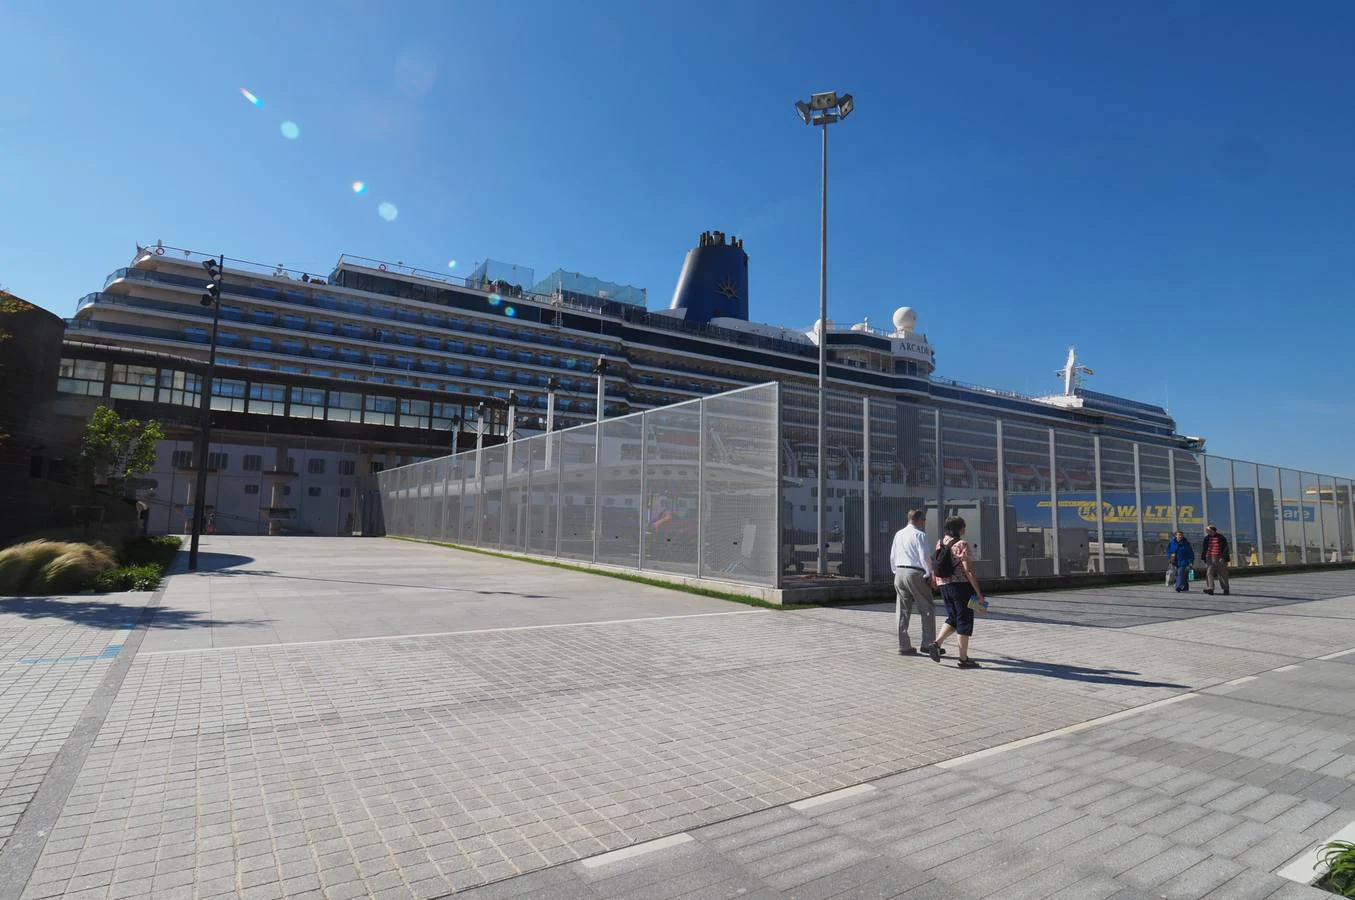 El crucero 'Arcadia' ha atracado este miércoles en Santander y permanecerá en la ciudad hasta las cuatro de la tarde. Es uno de los más grandes (290 metros de eslora) de la decena de cruceros programados para este año.